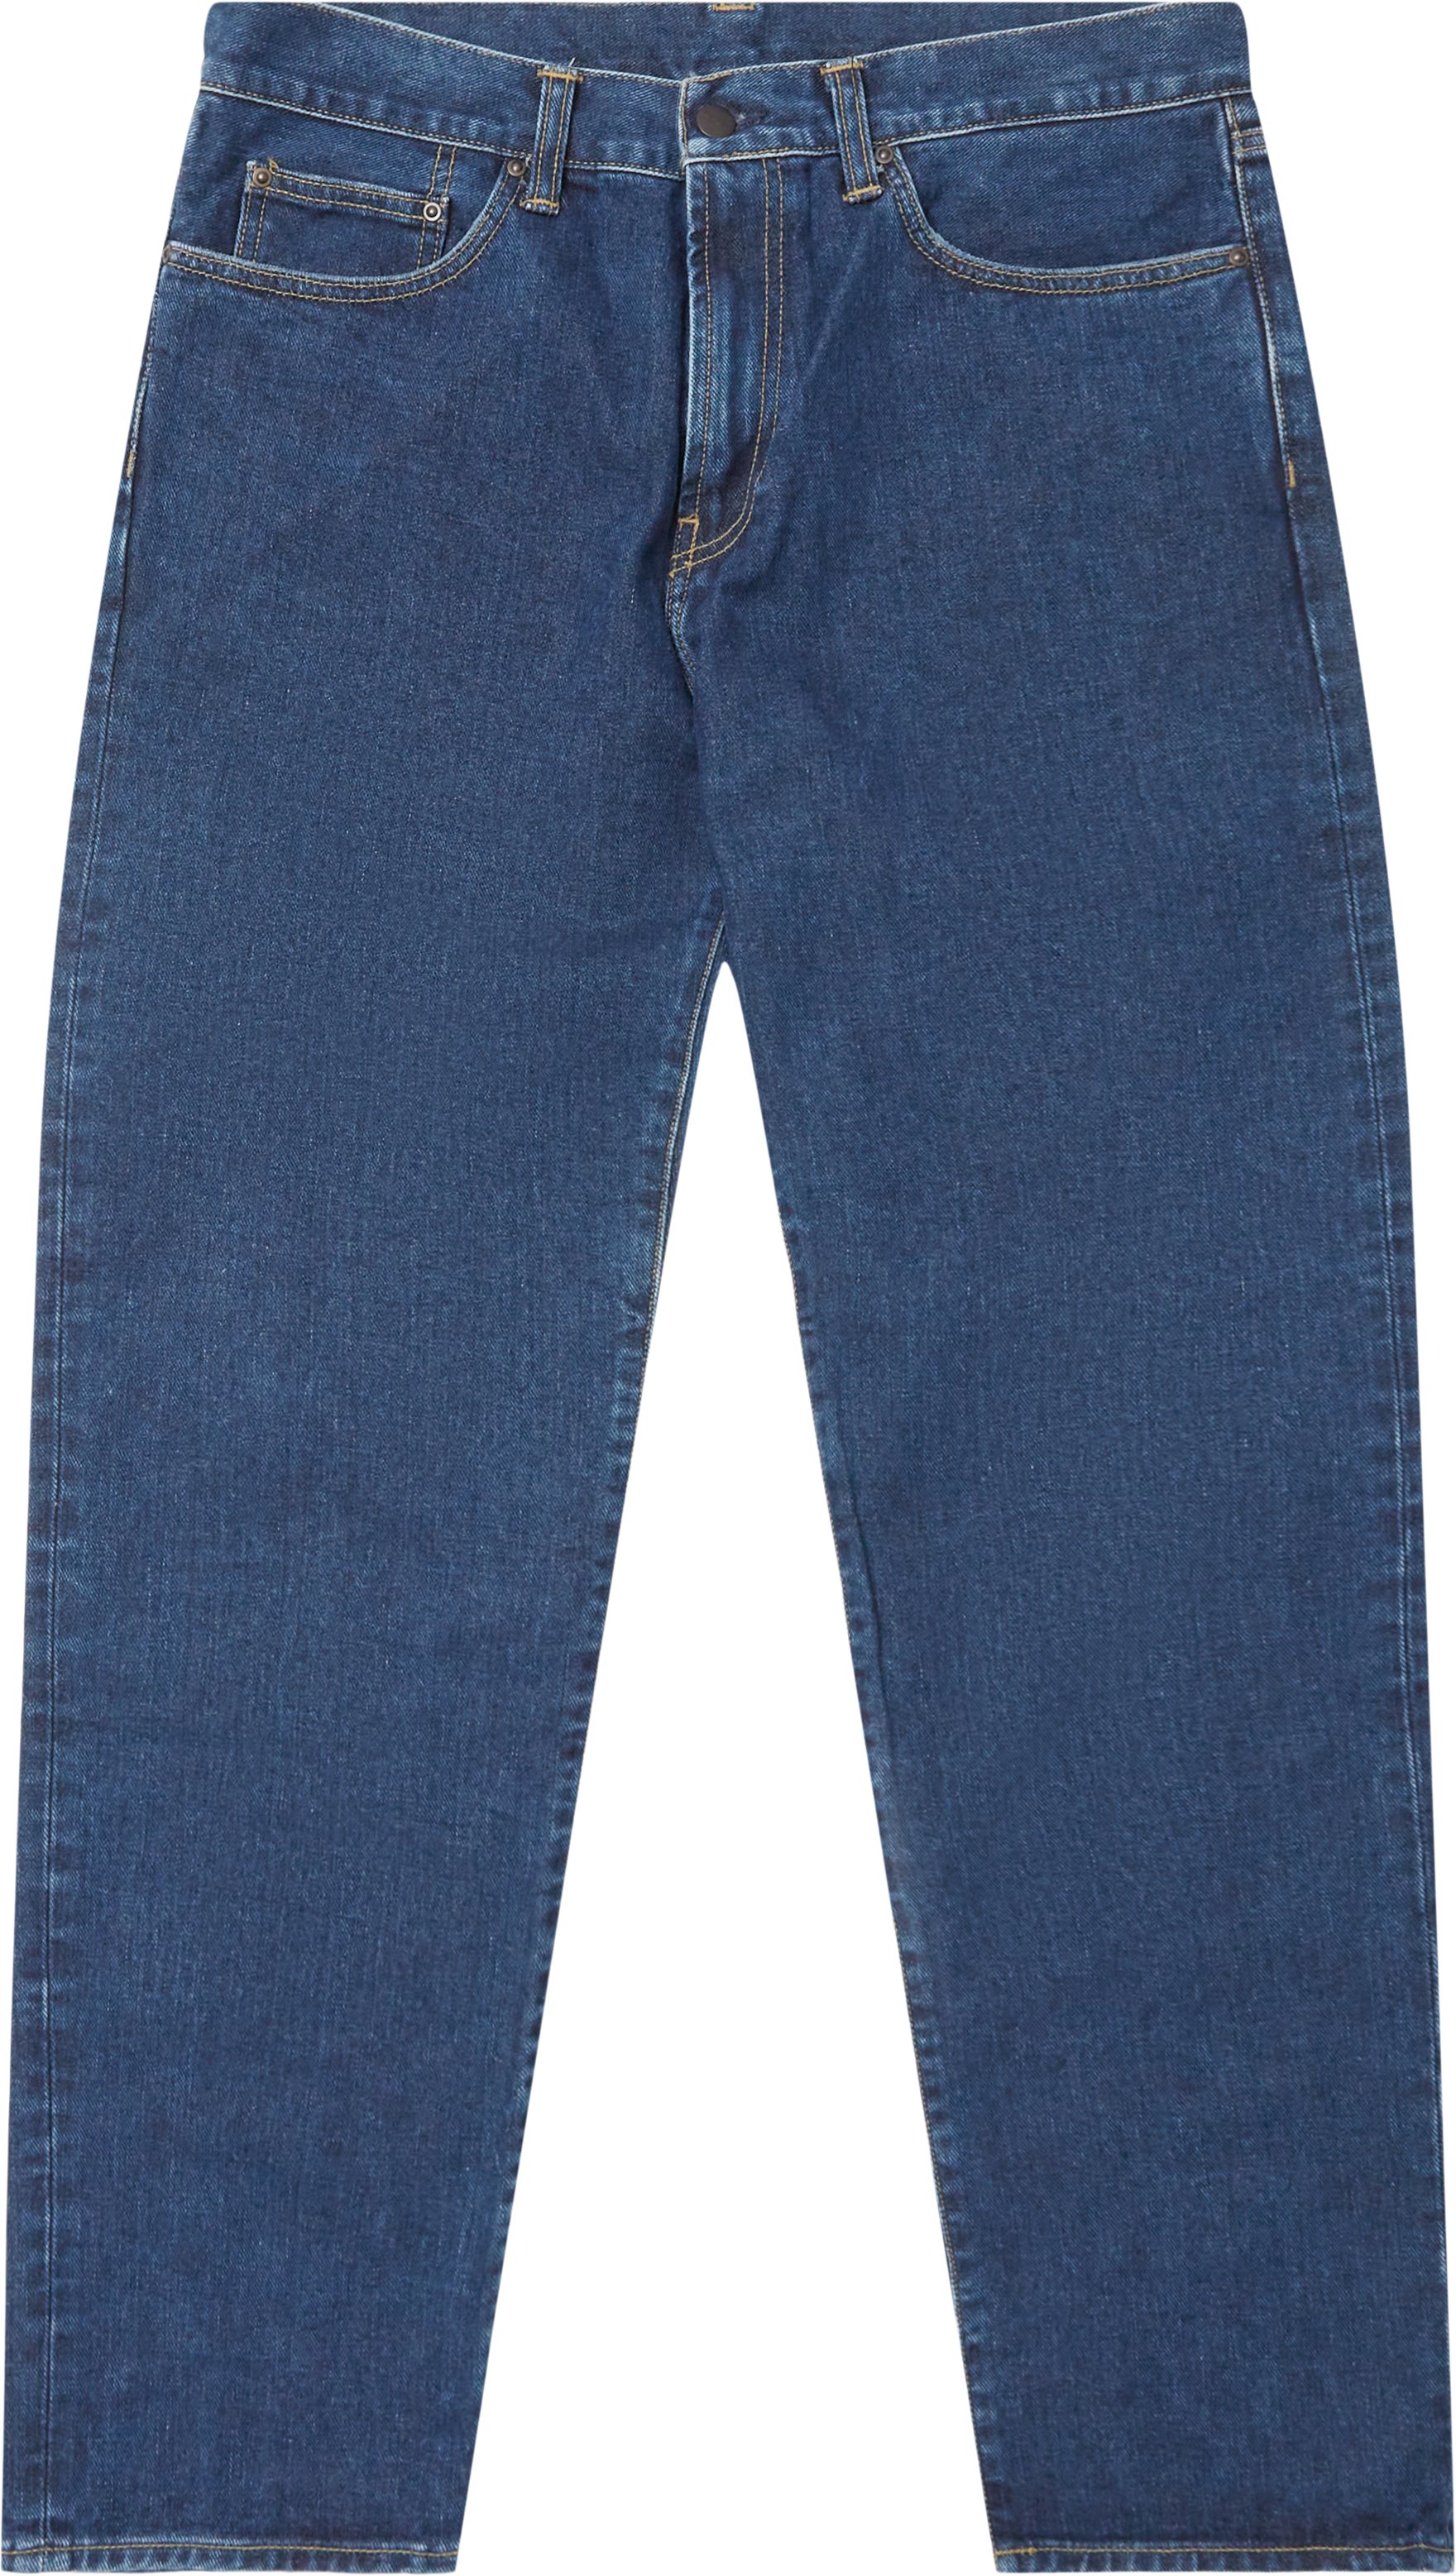 Carhartt WIP Jeans PONTIAC I029210.01.06 Denim